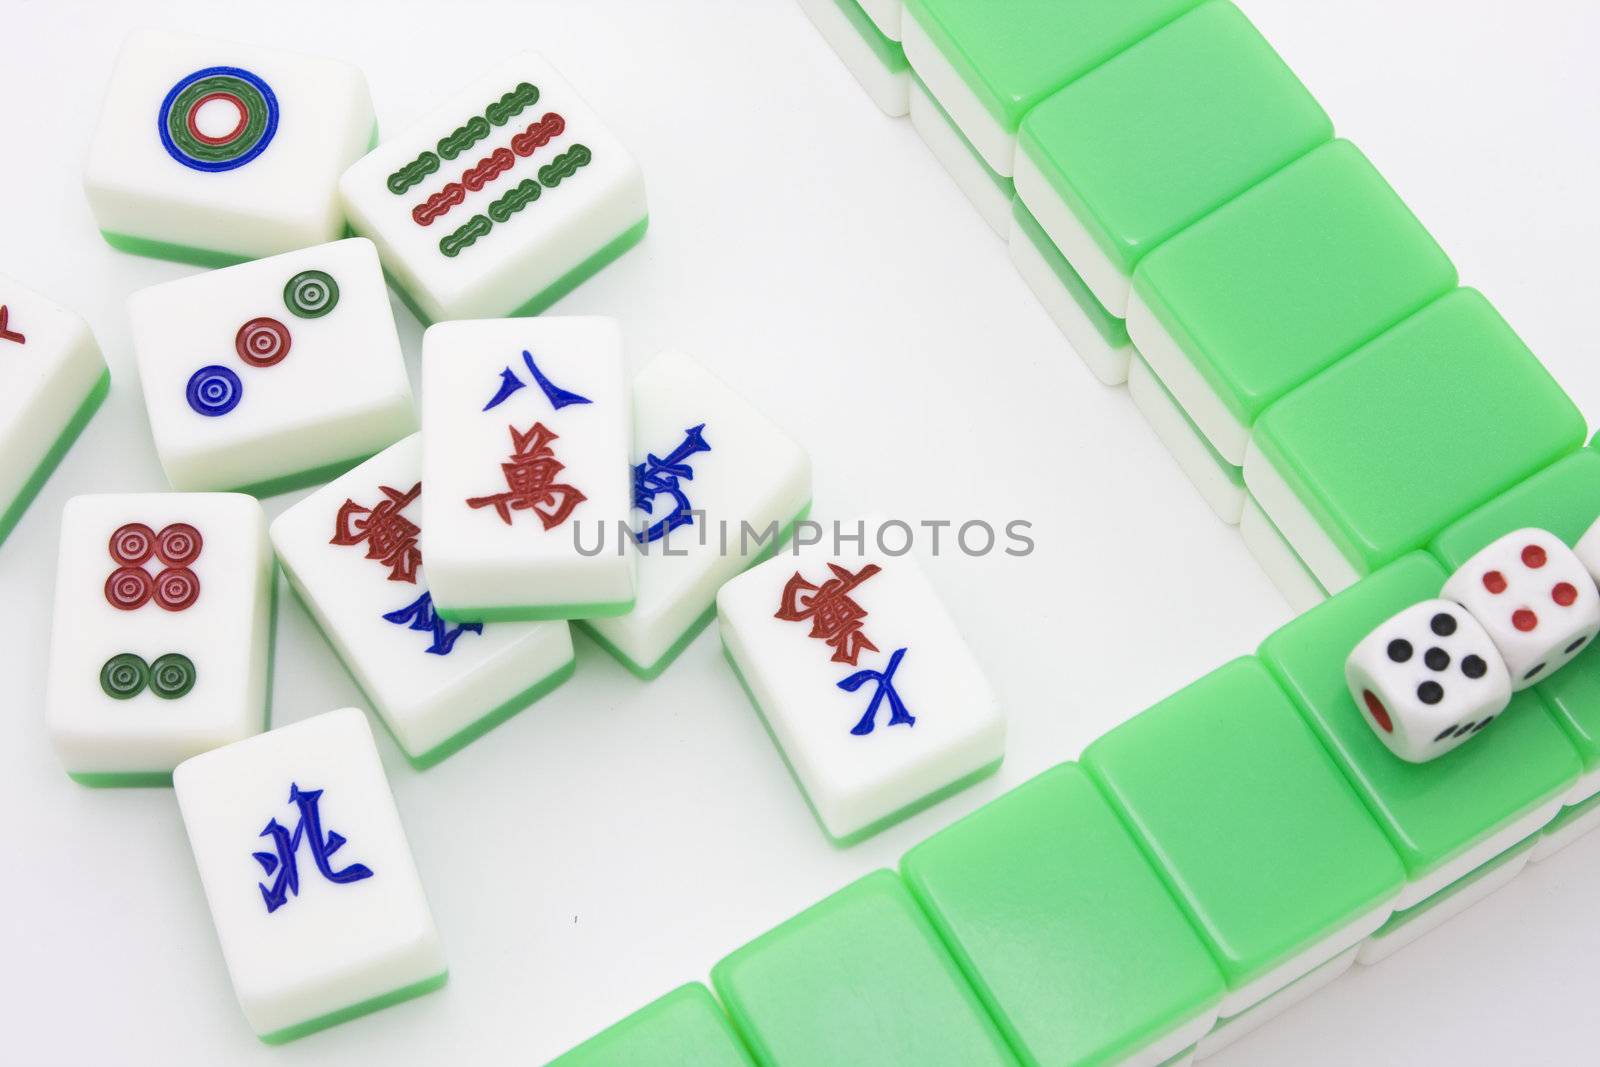 Chinese game similar to poker. Very popular gambling game.